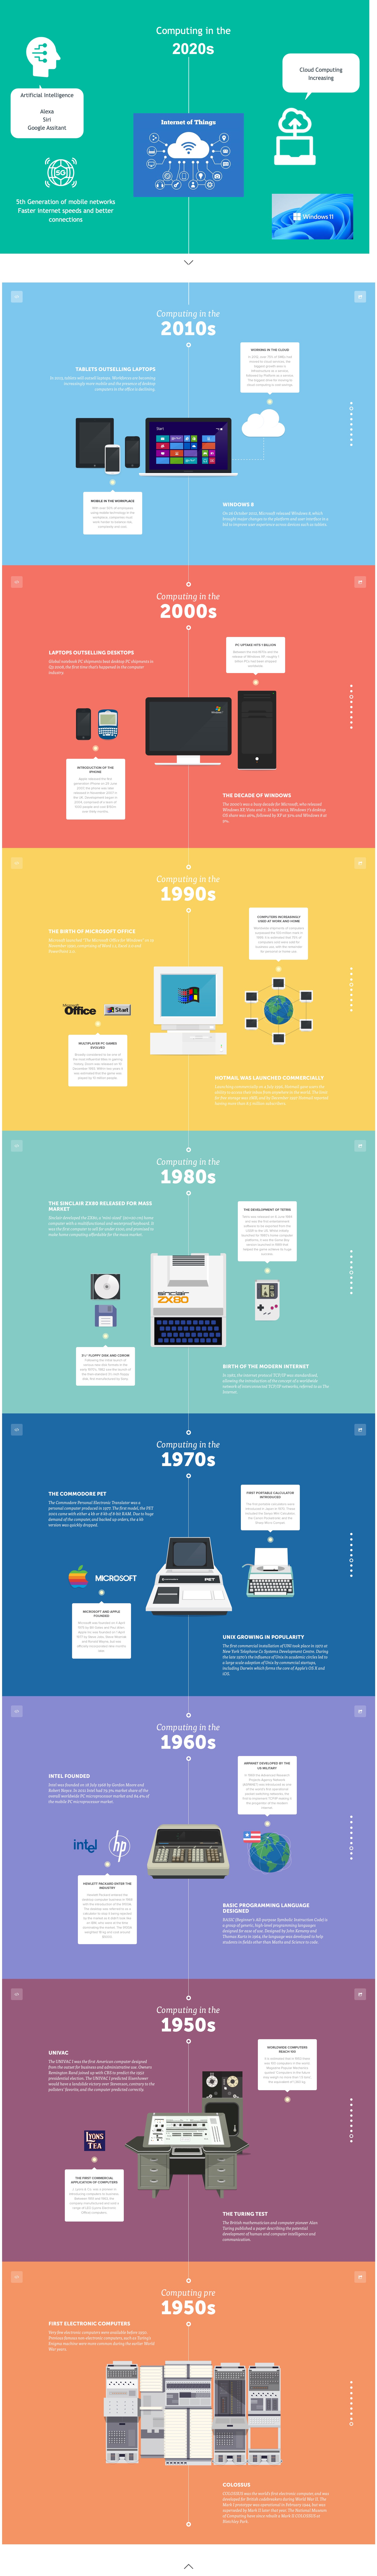 Visual history of computing